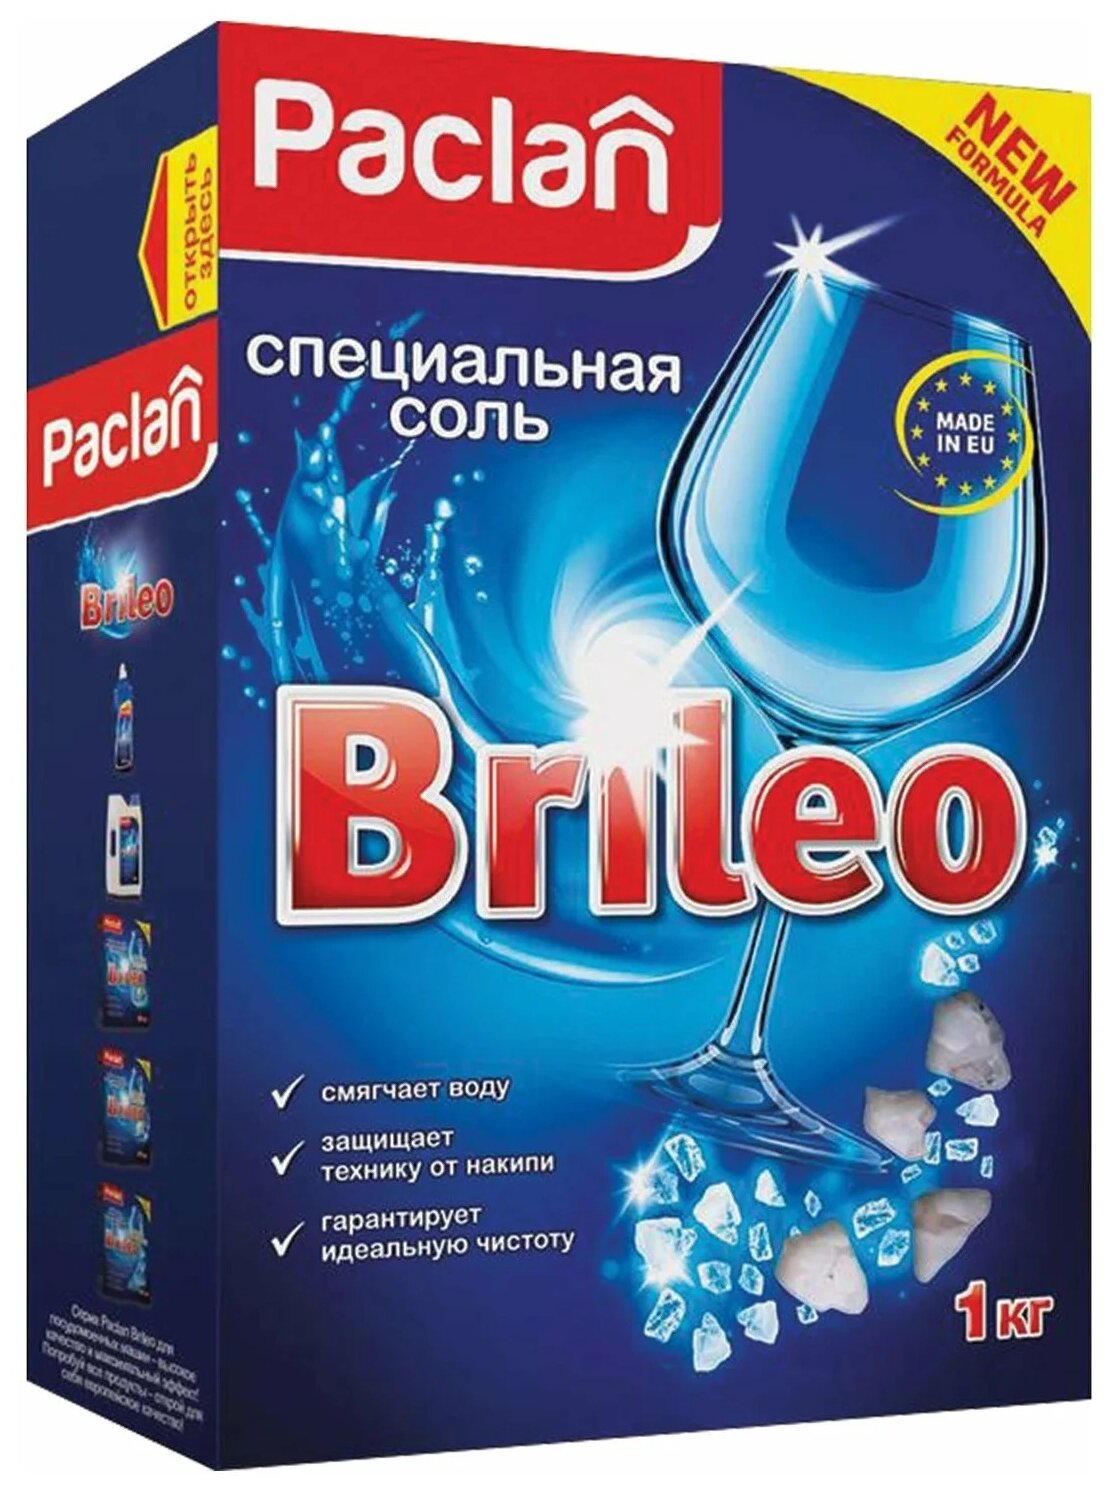 Paclan Brileo Специальная соль для посудомоченых машин 1 кг